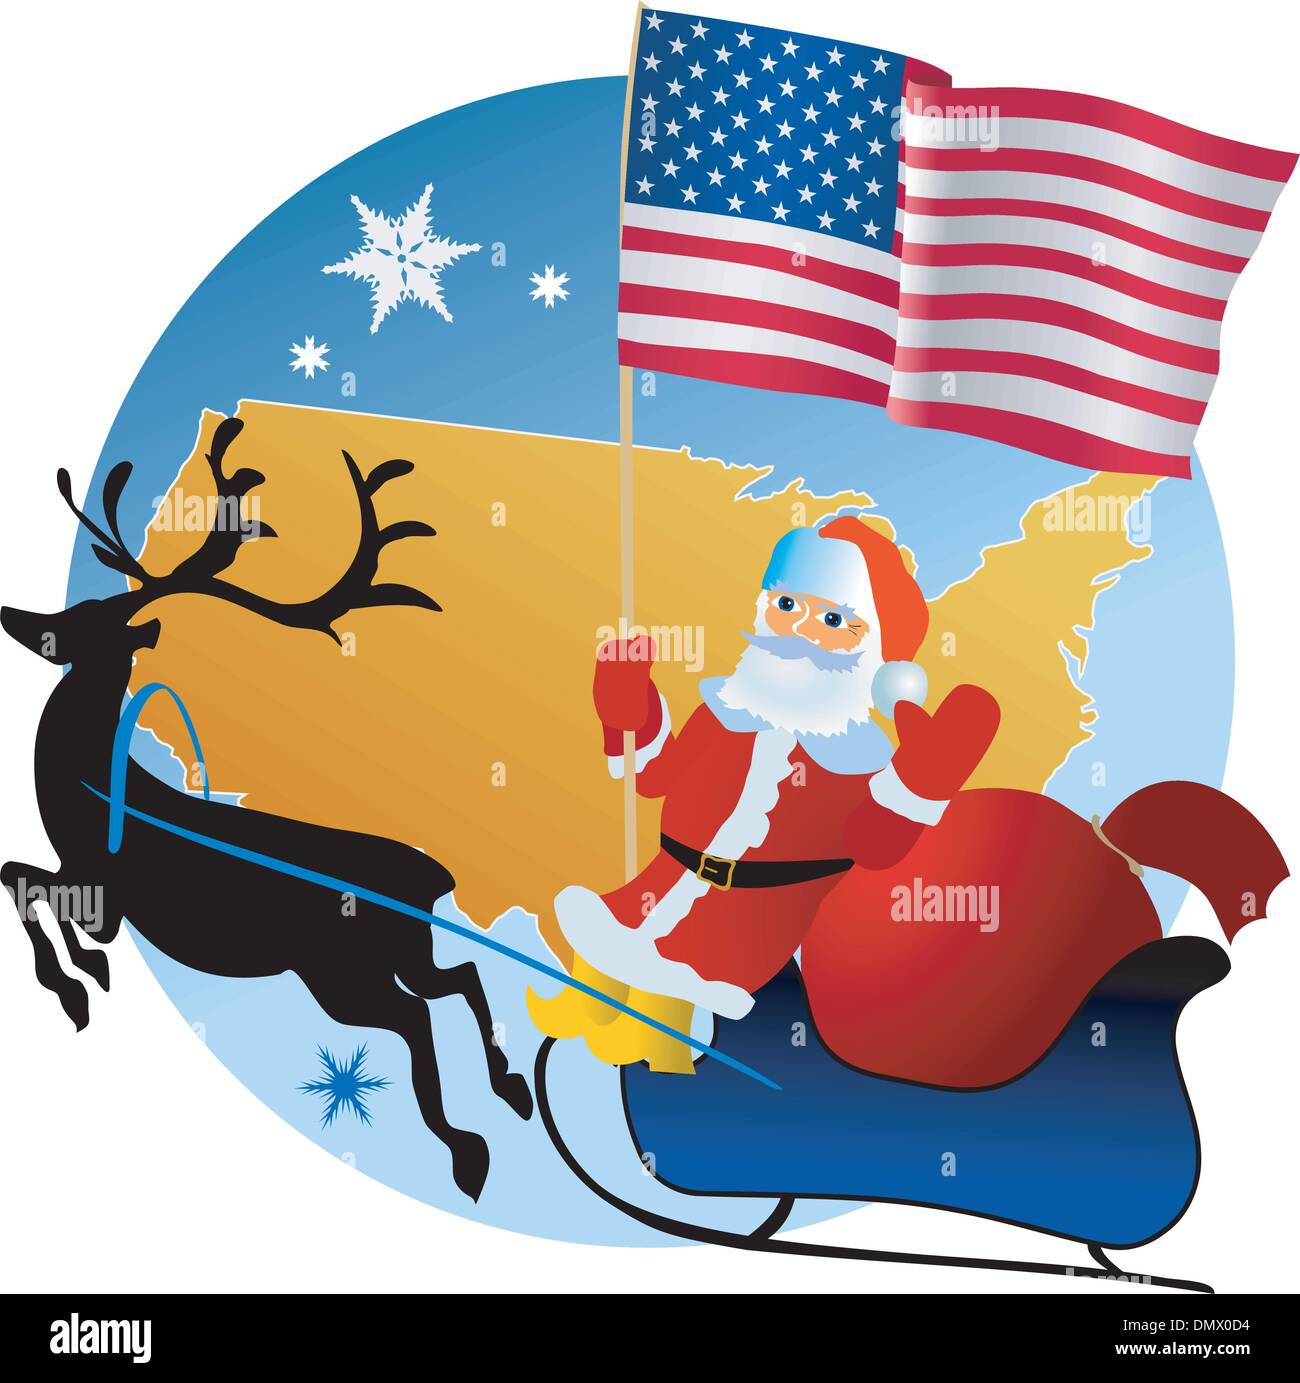 Merry Christmas, USA! Stock Vector